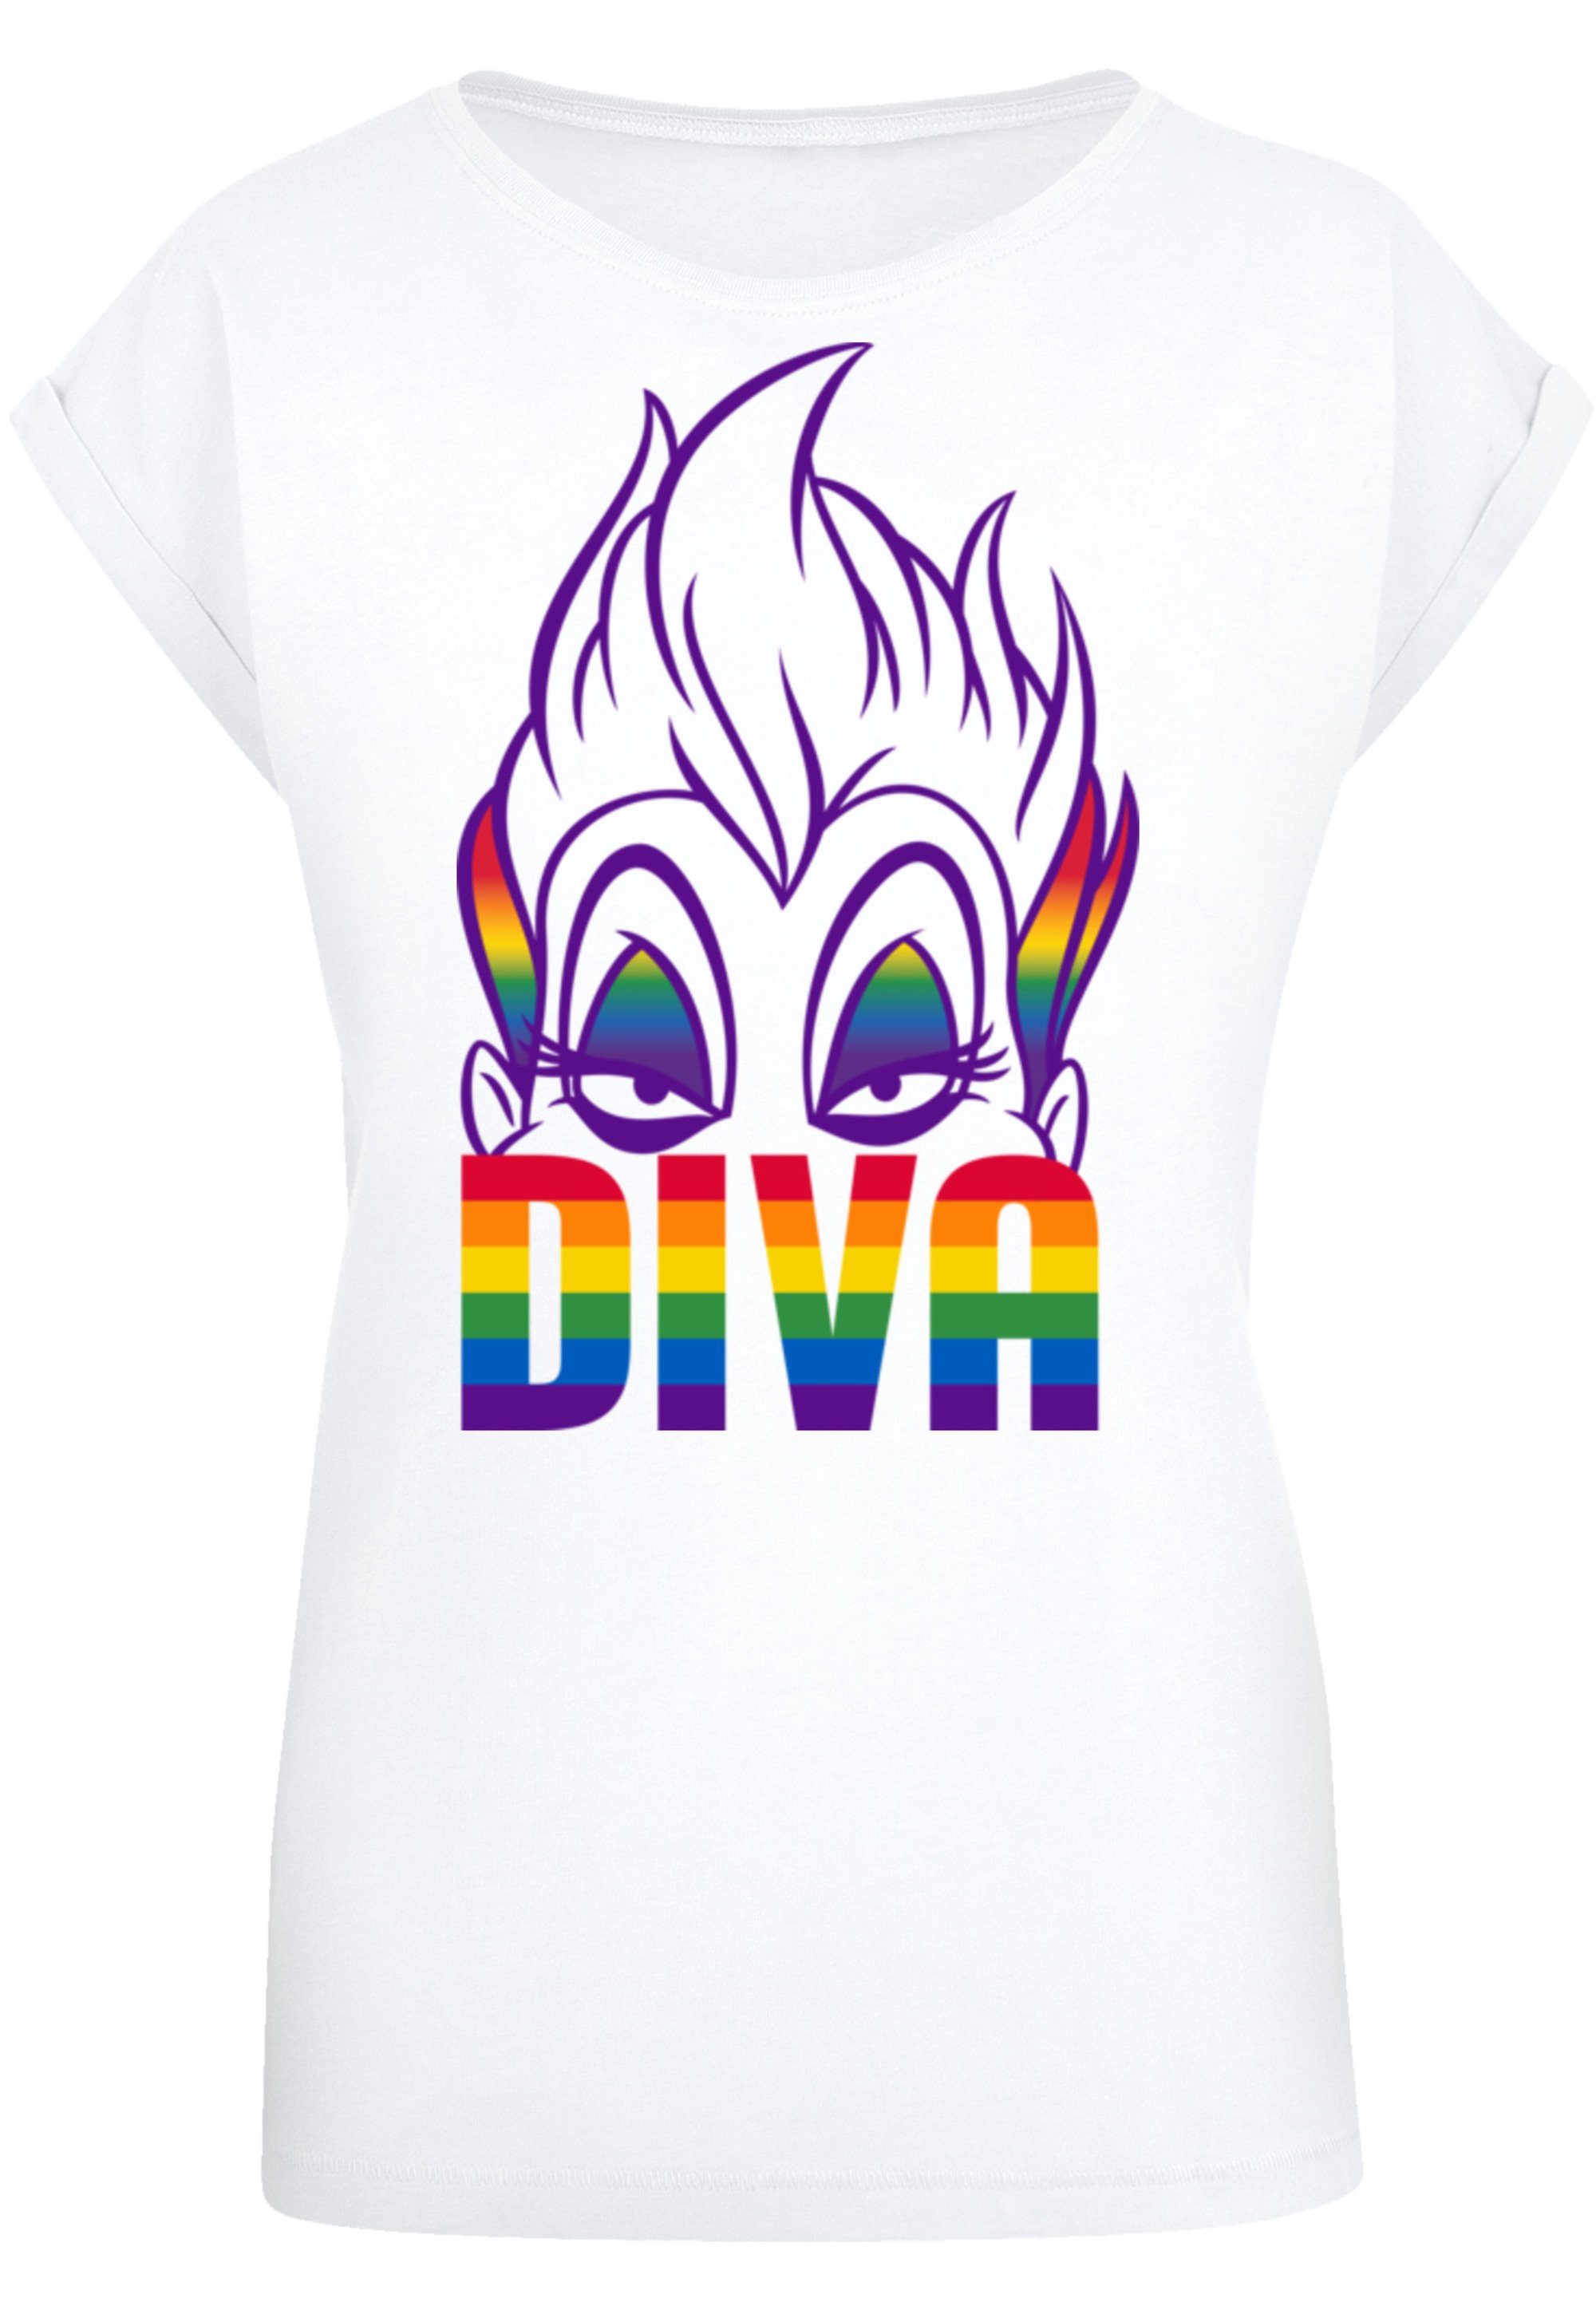 mit Villains Premium Diva Qualität, F4NT4STIC weicher hohem Baumwollstoff Sehr T-Shirt Tragekomfort Disney